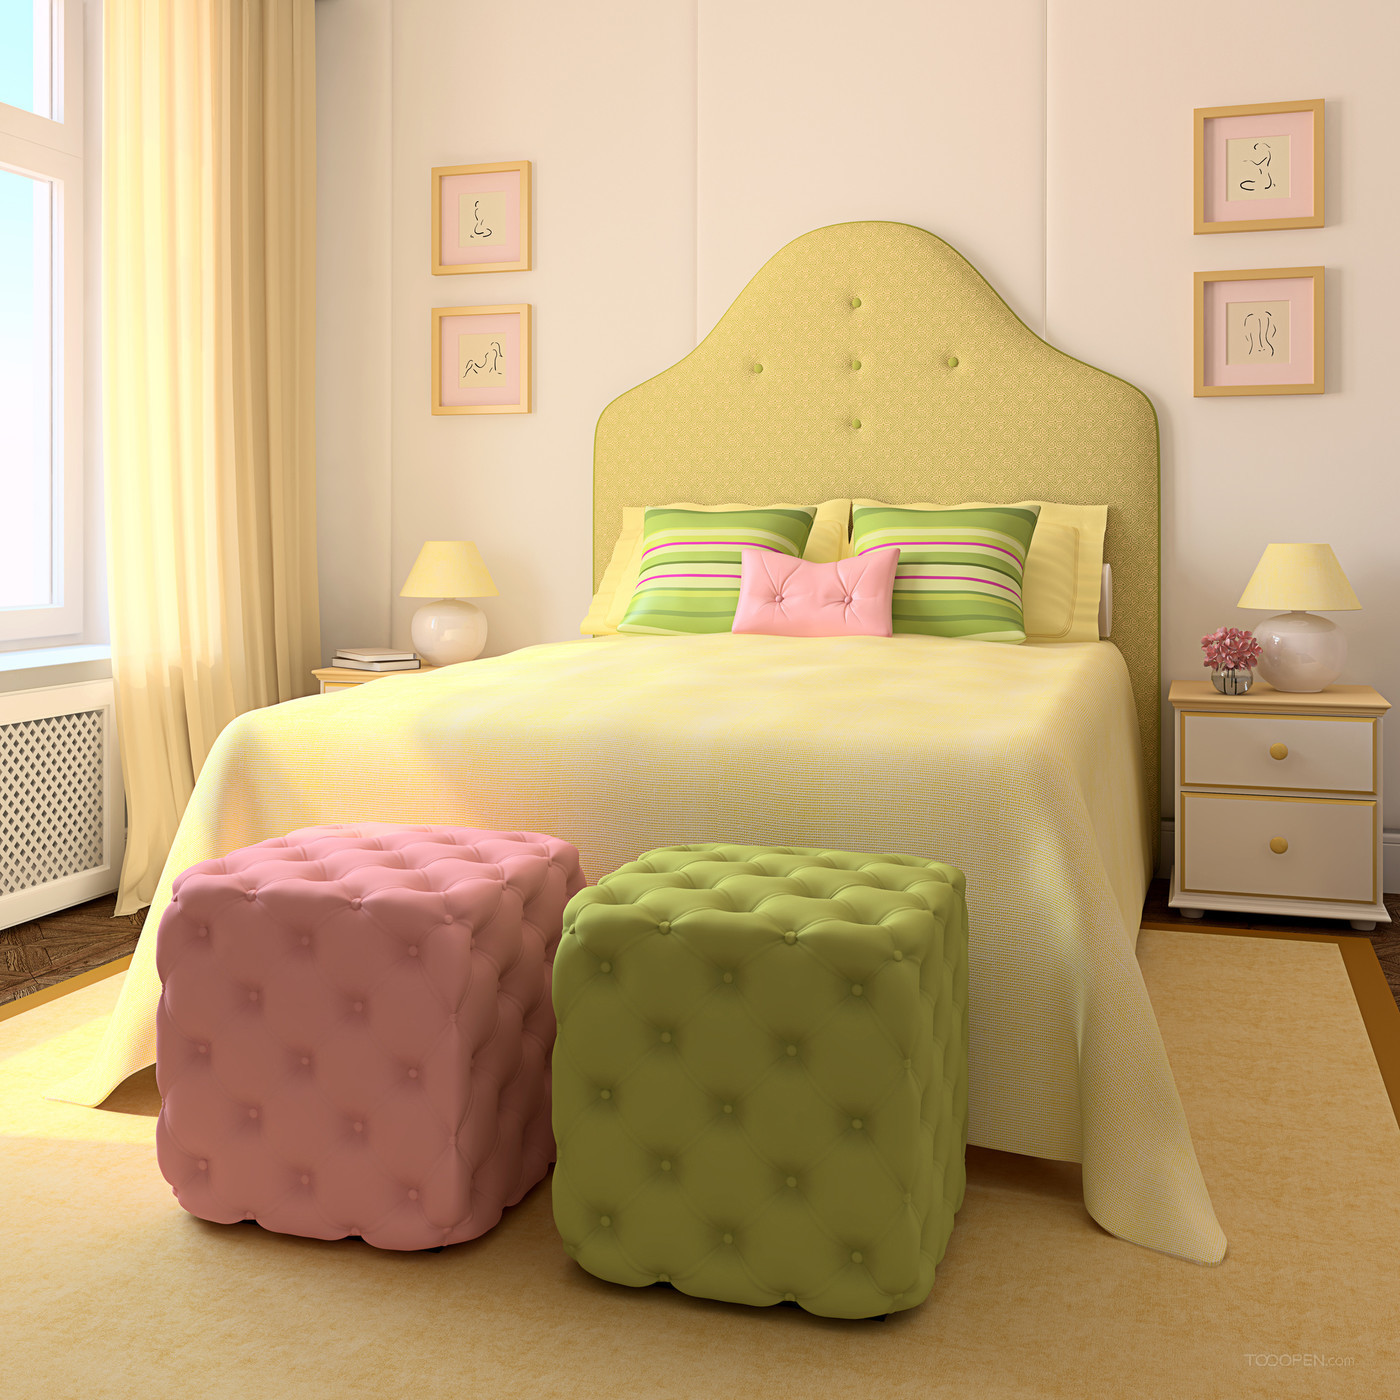 3D渲染室内儿童卧室效果图-01